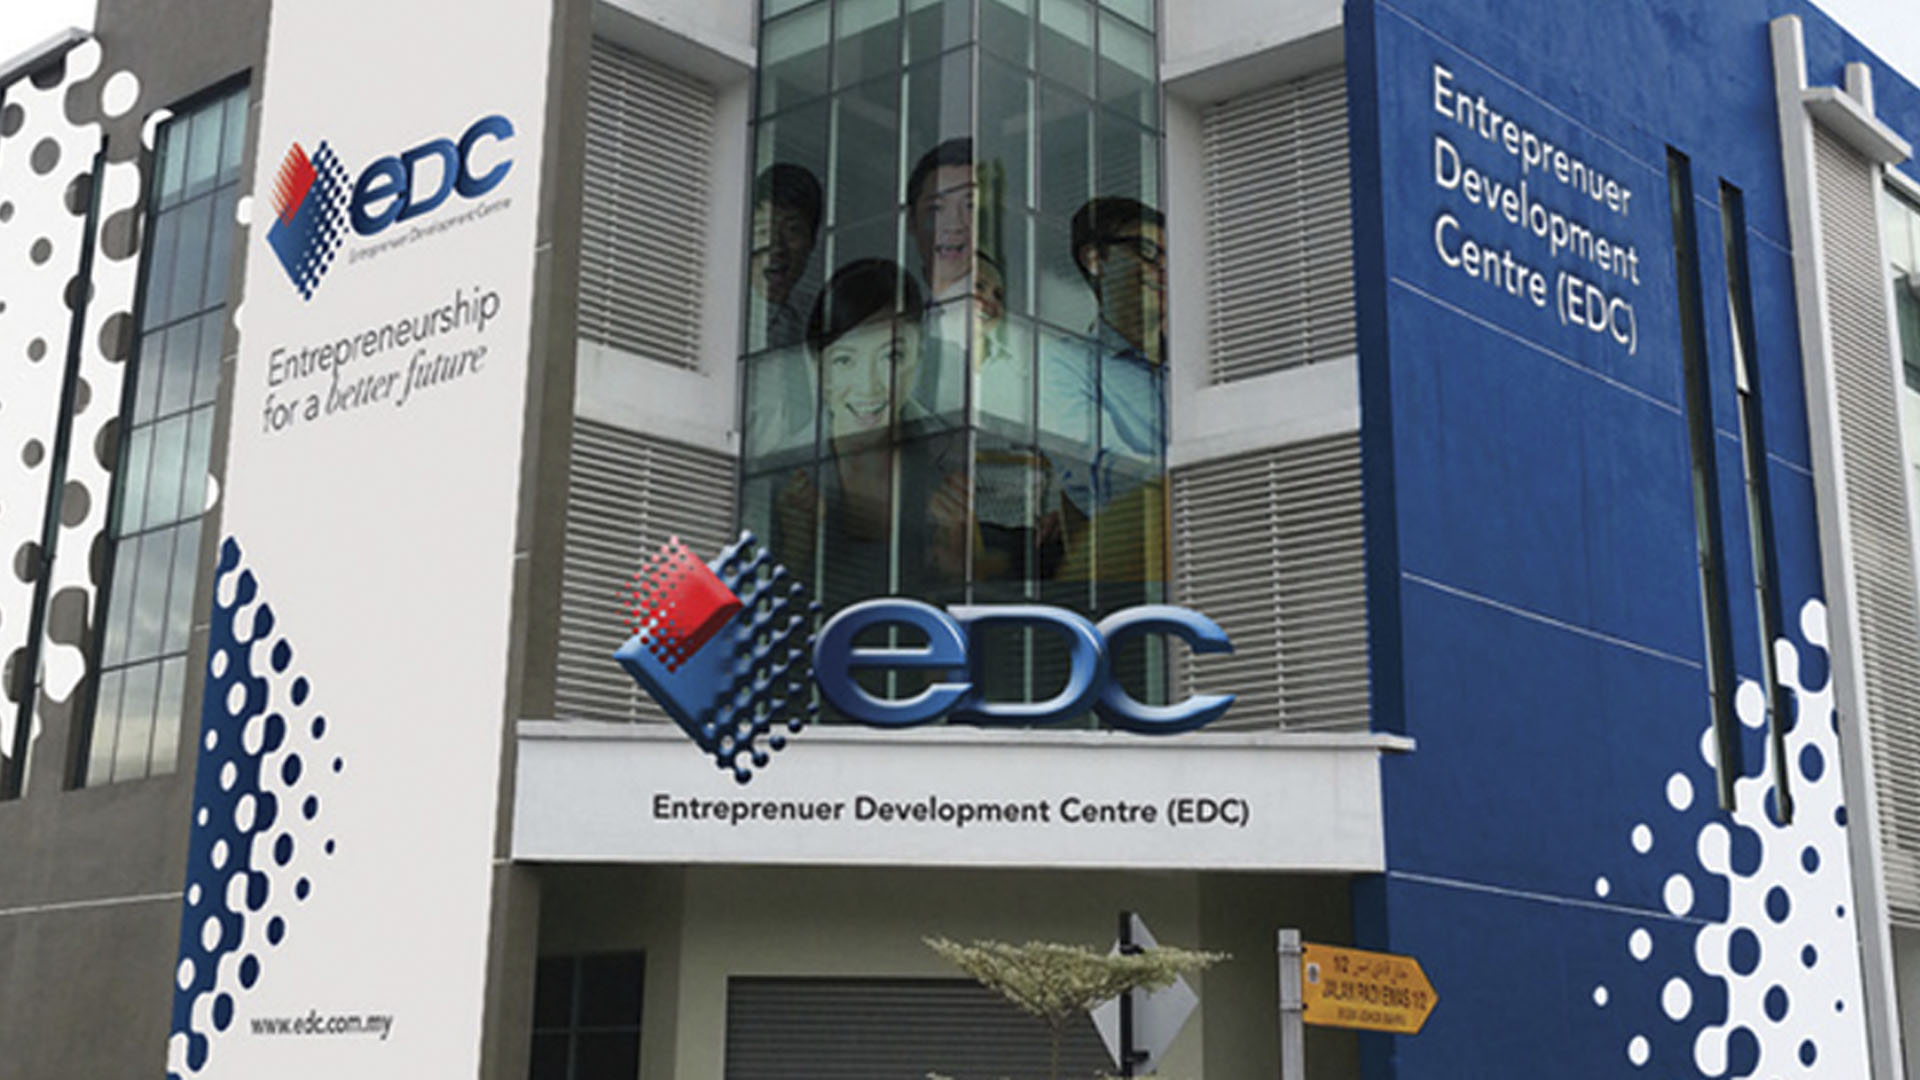 Entrepreneur Development Centre (EDC)